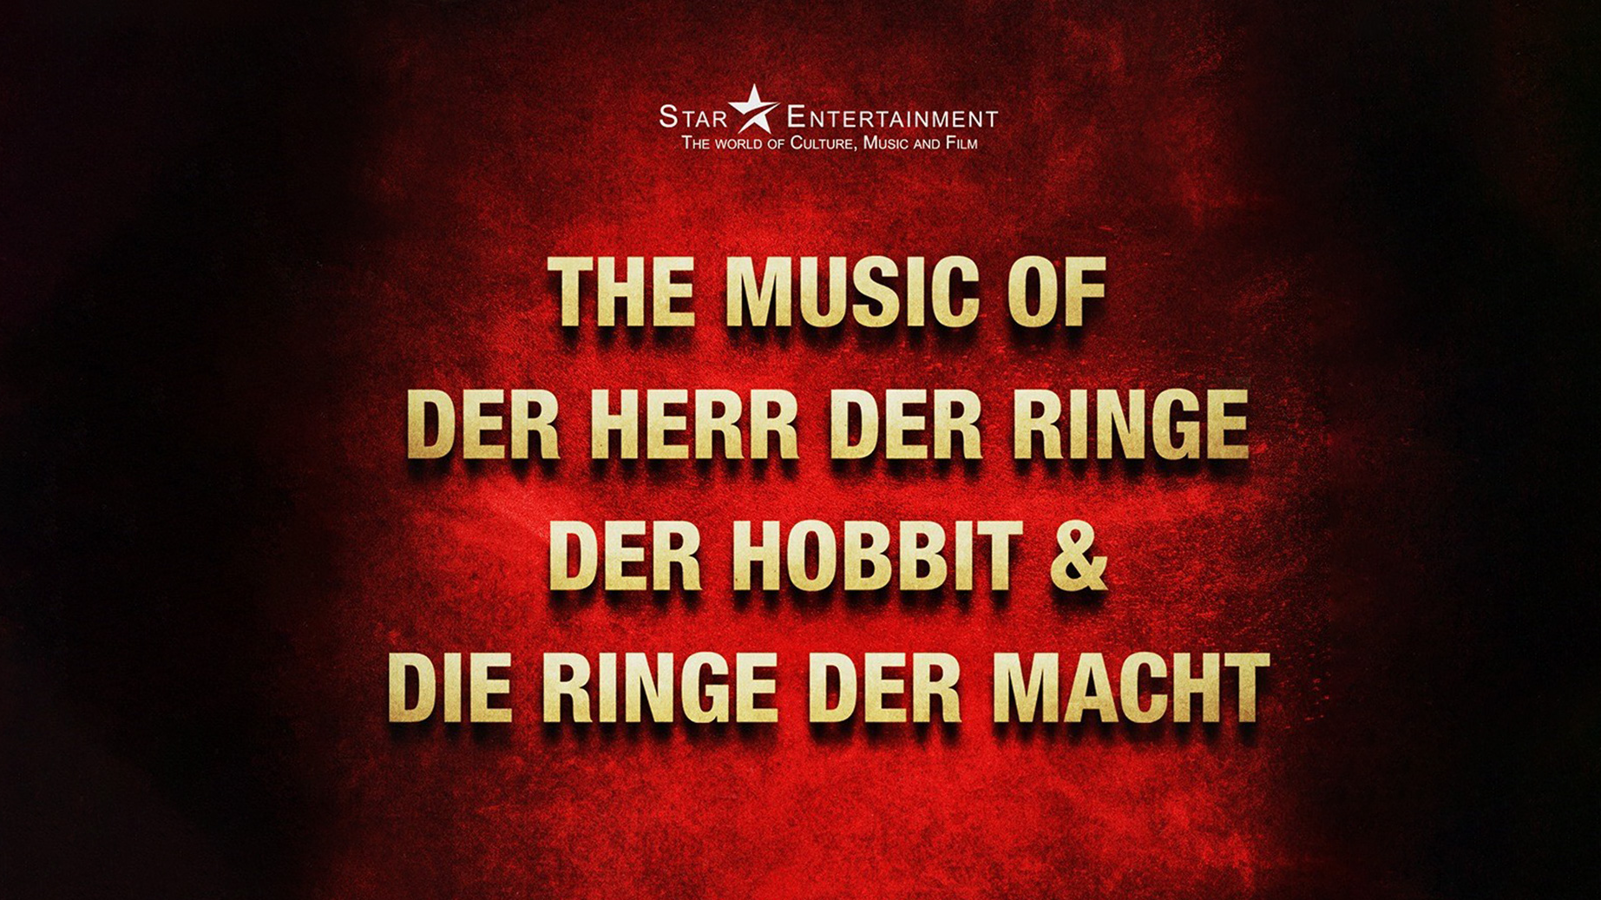 The Music of Der Herr der Ringe, Der Hobbit & Die Ringe der Macht